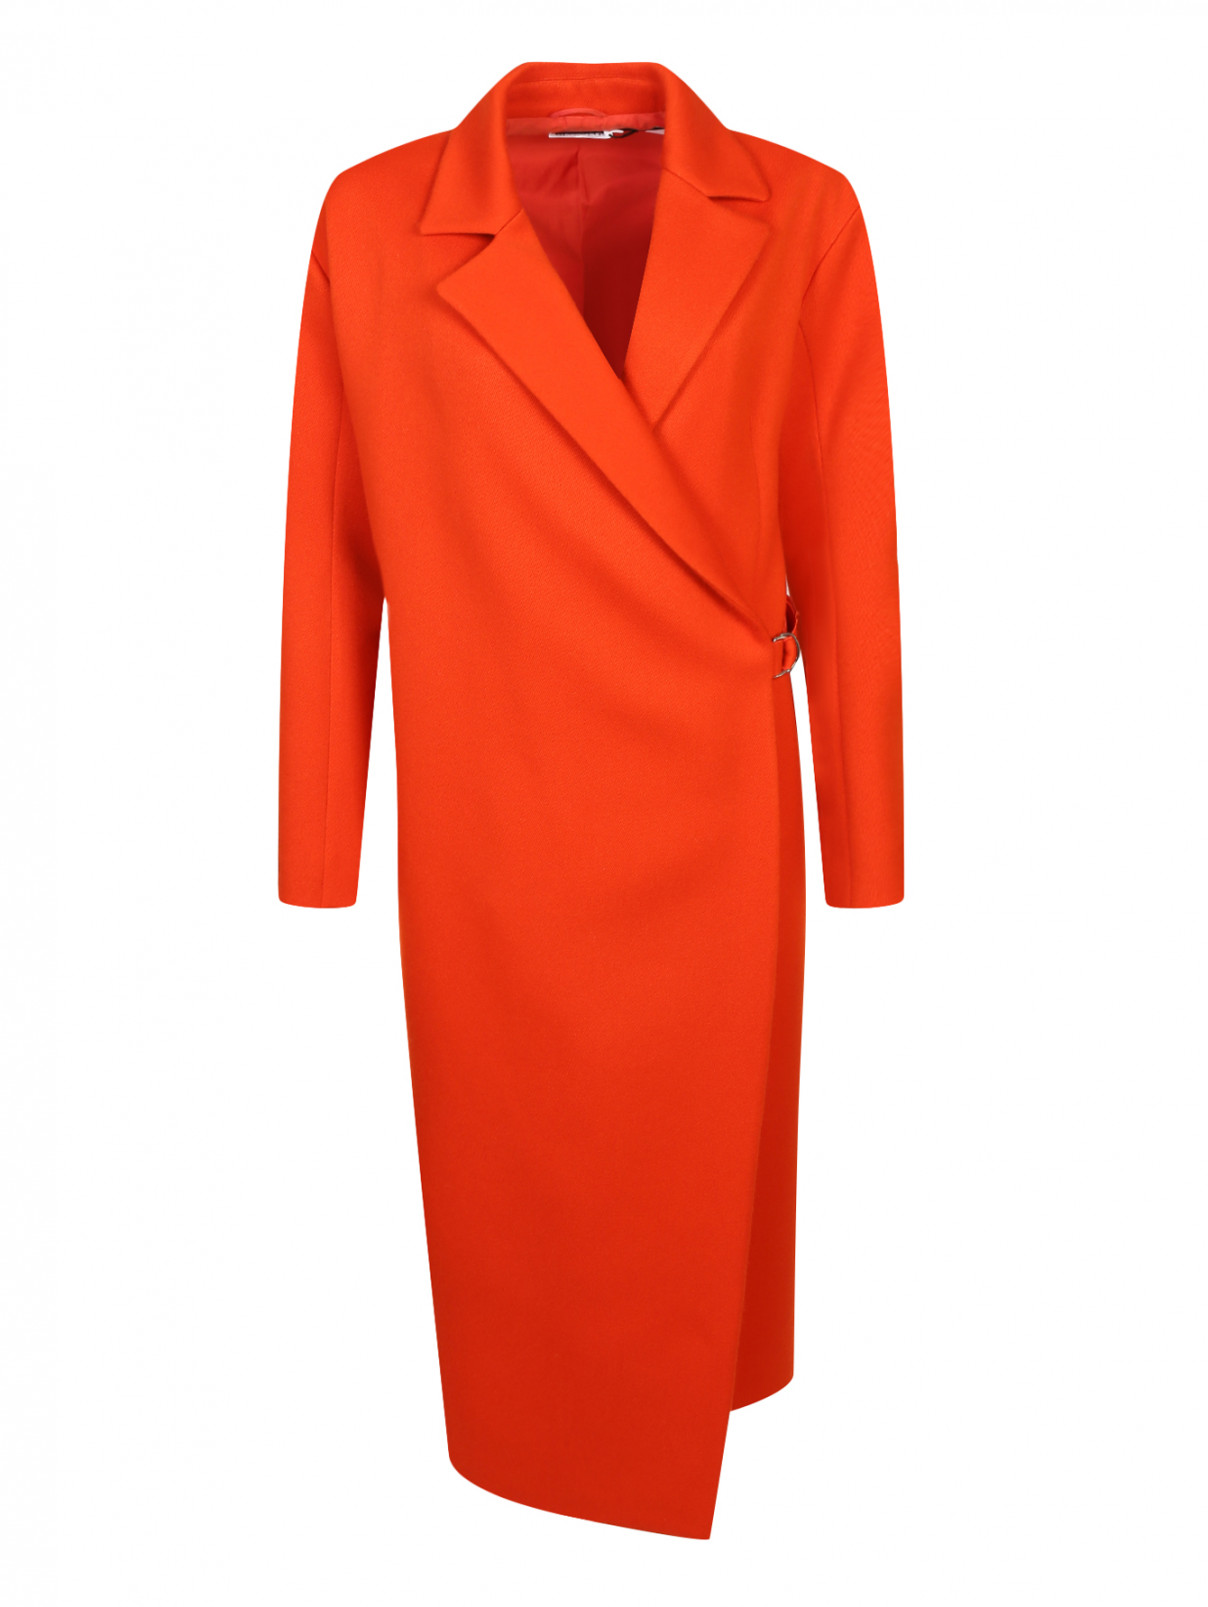 Удлиненное пальто из шерсти Jil Sander  –  Общий вид  – Цвет:  Оранжевый